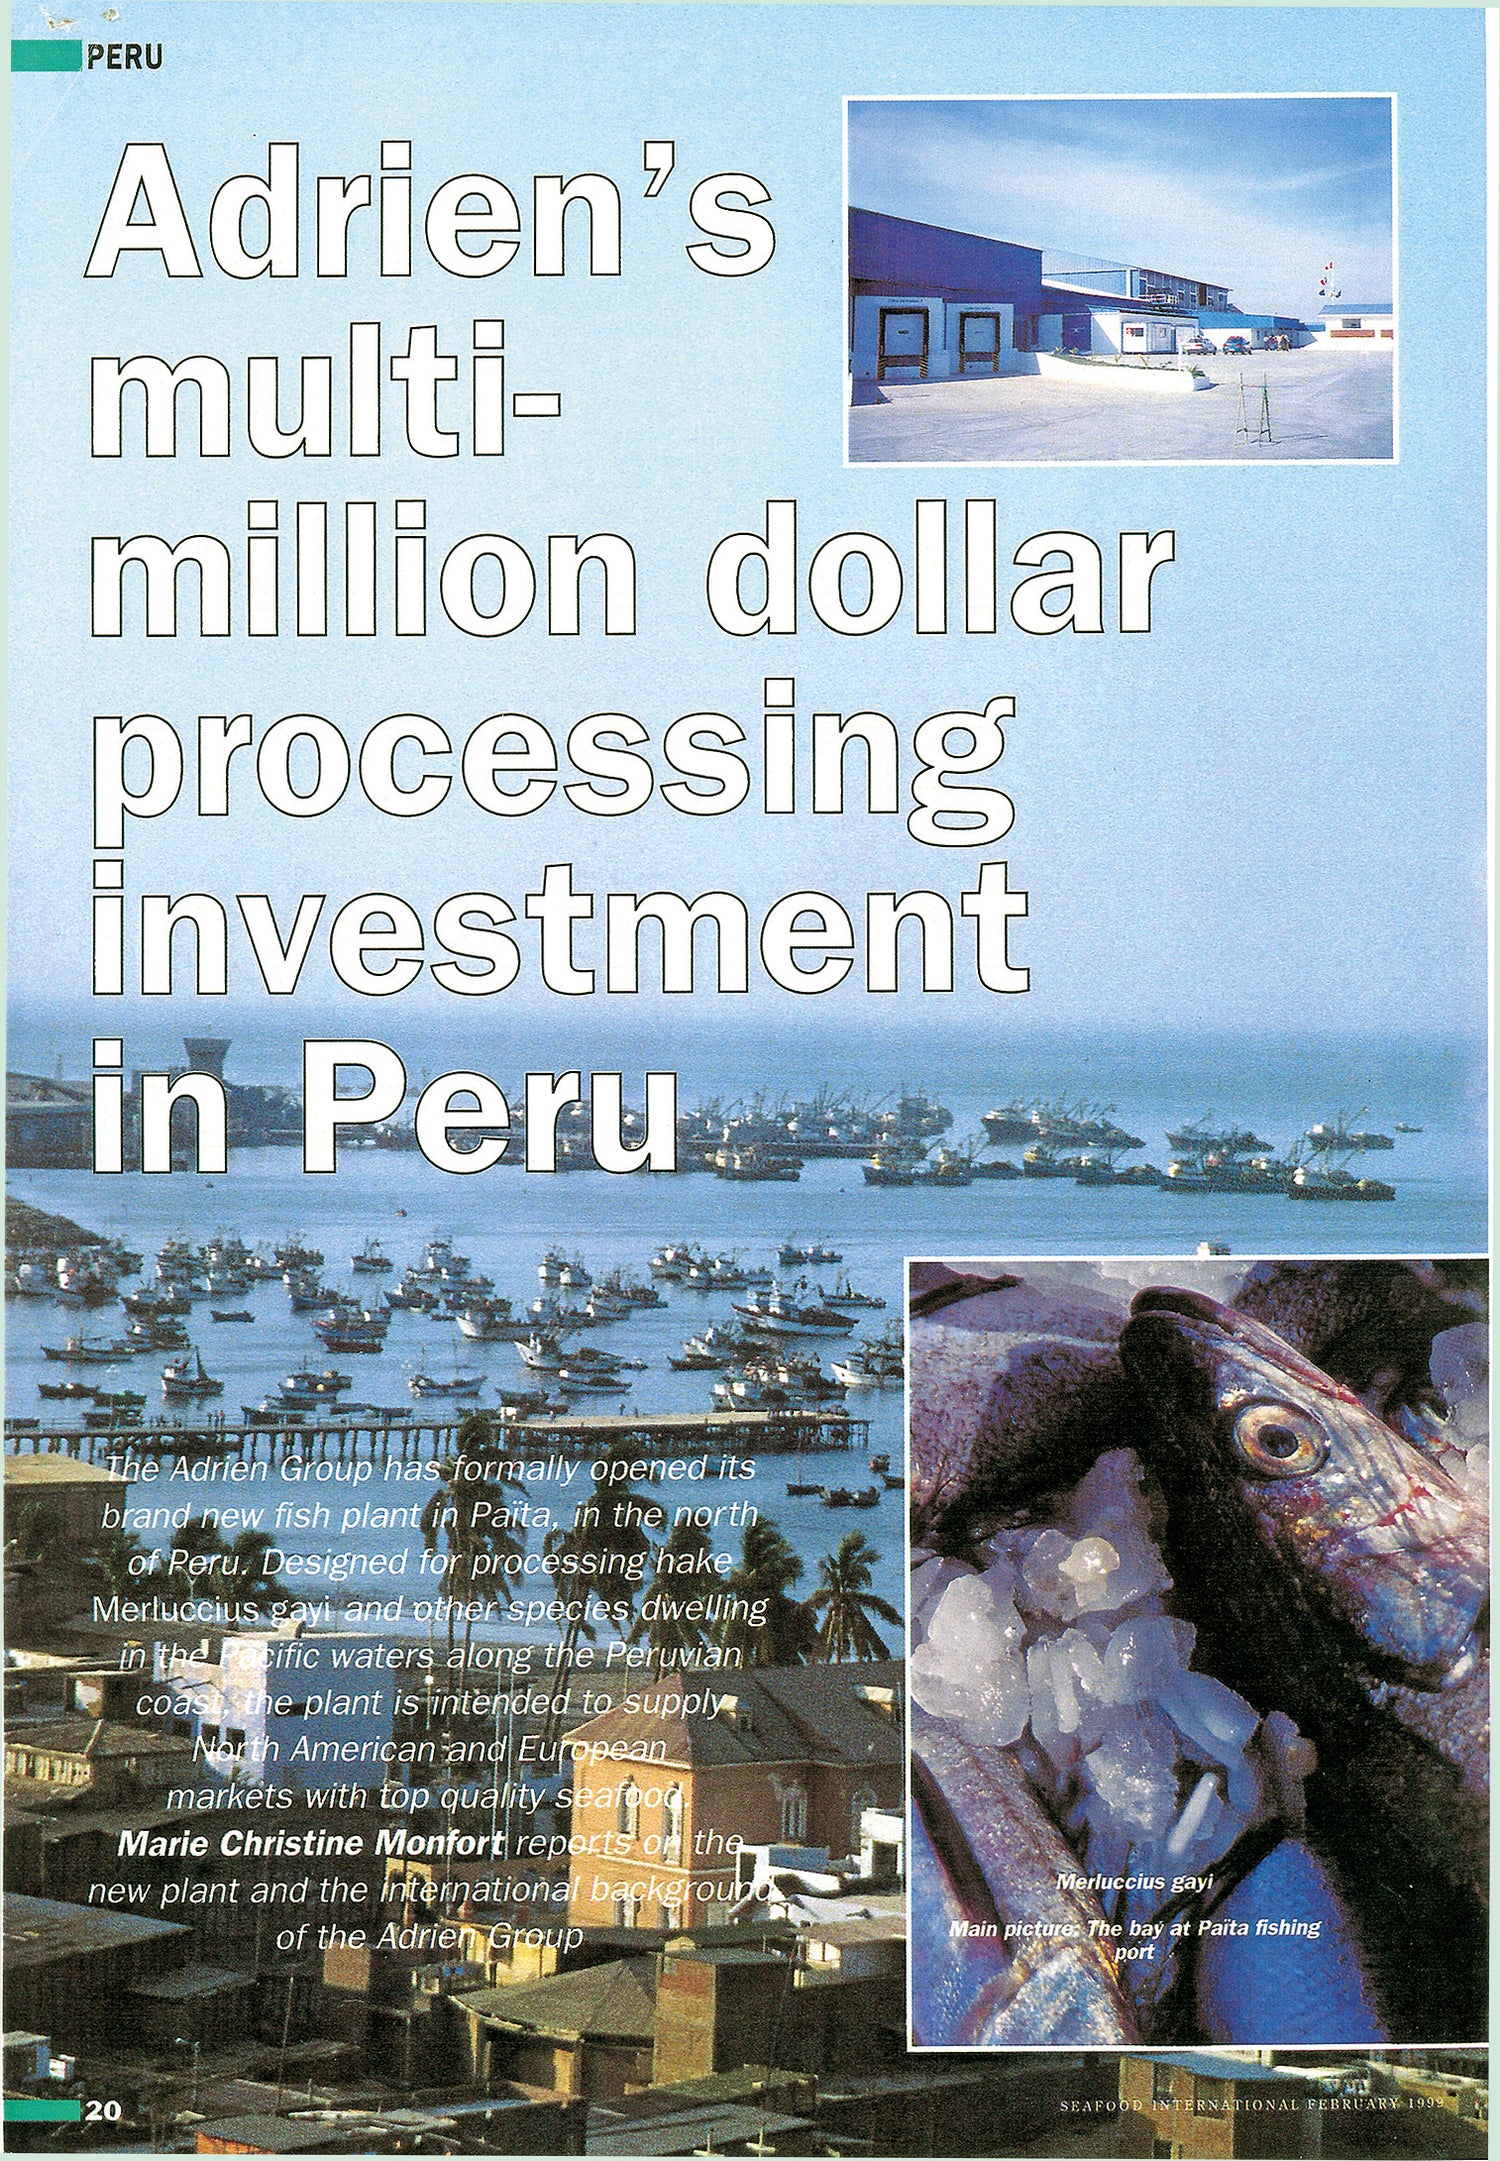 Article de Presse paru dans Seafood international au sujet de l'implantation du Groupe Adrien au Pérou, en 1999